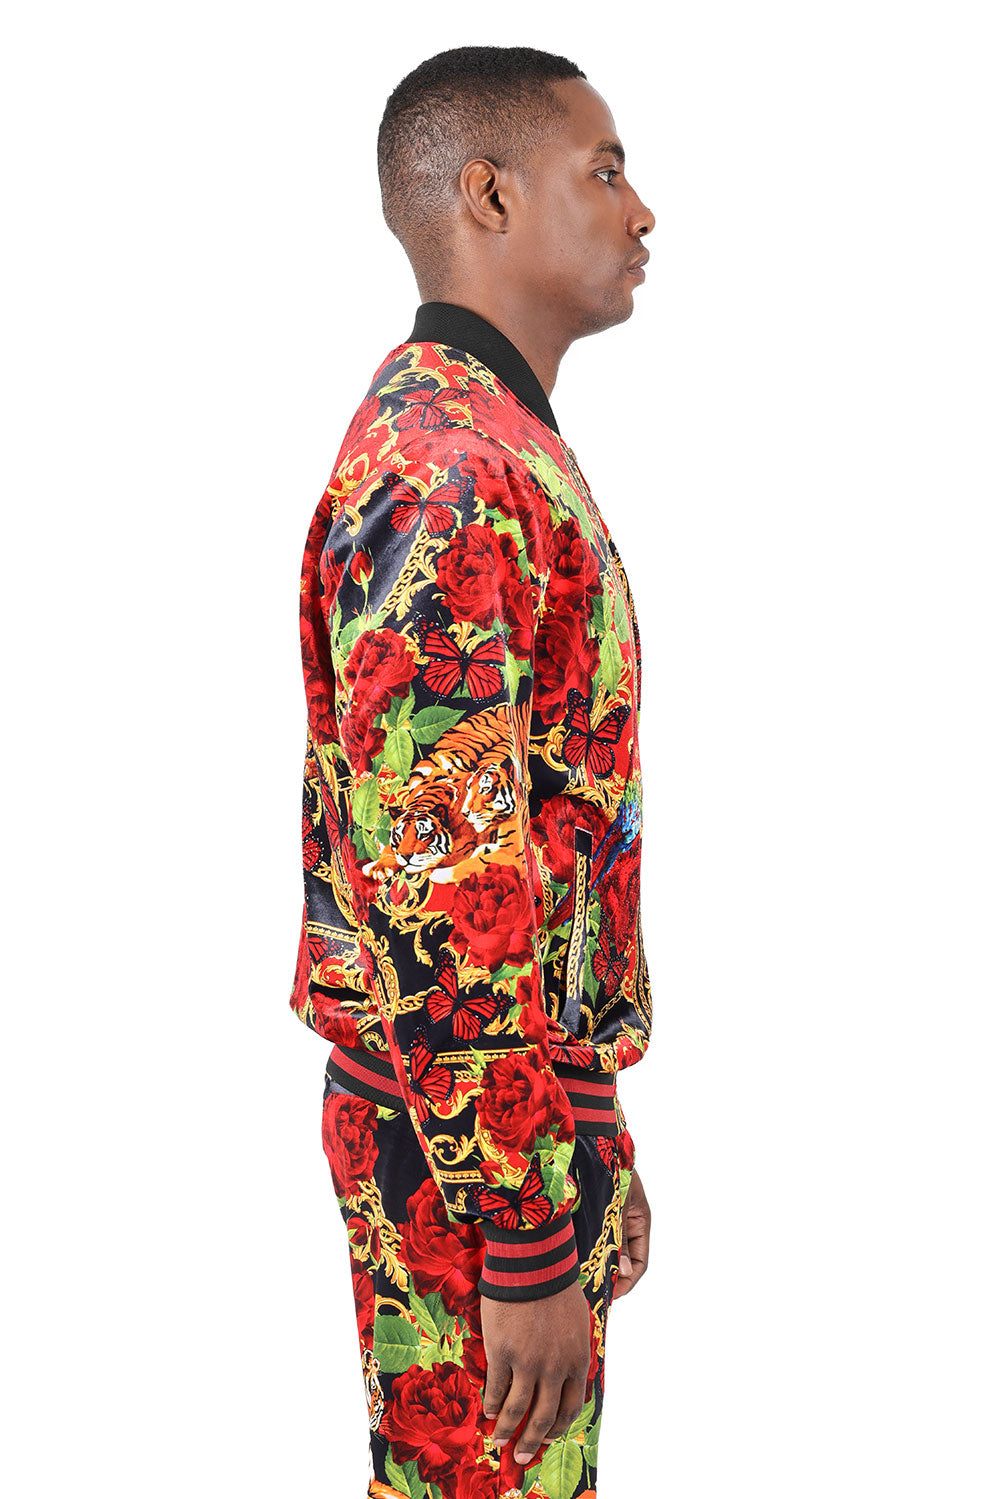 BARABAS Men's Tiger Floral Baroque Design Bamber Jacket 2JBP20